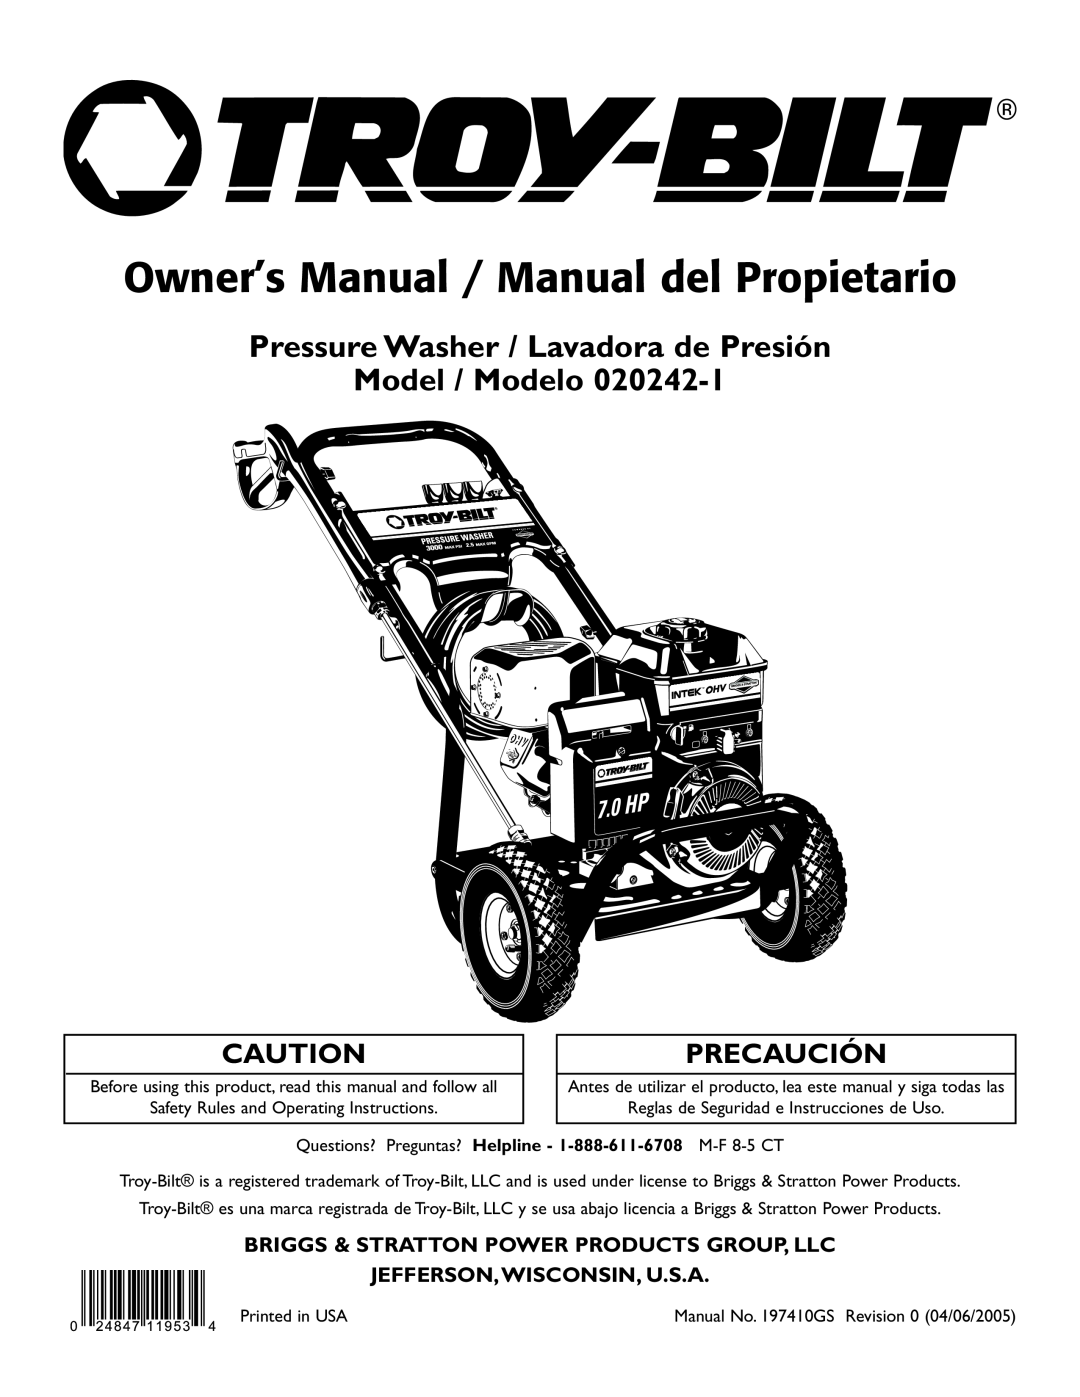 Troy-Bilt 020242-1 owner manual Pressure Washer / Lavadora de Presión Model / Modelo, Jefferson,Wisconsin, U.S.A 